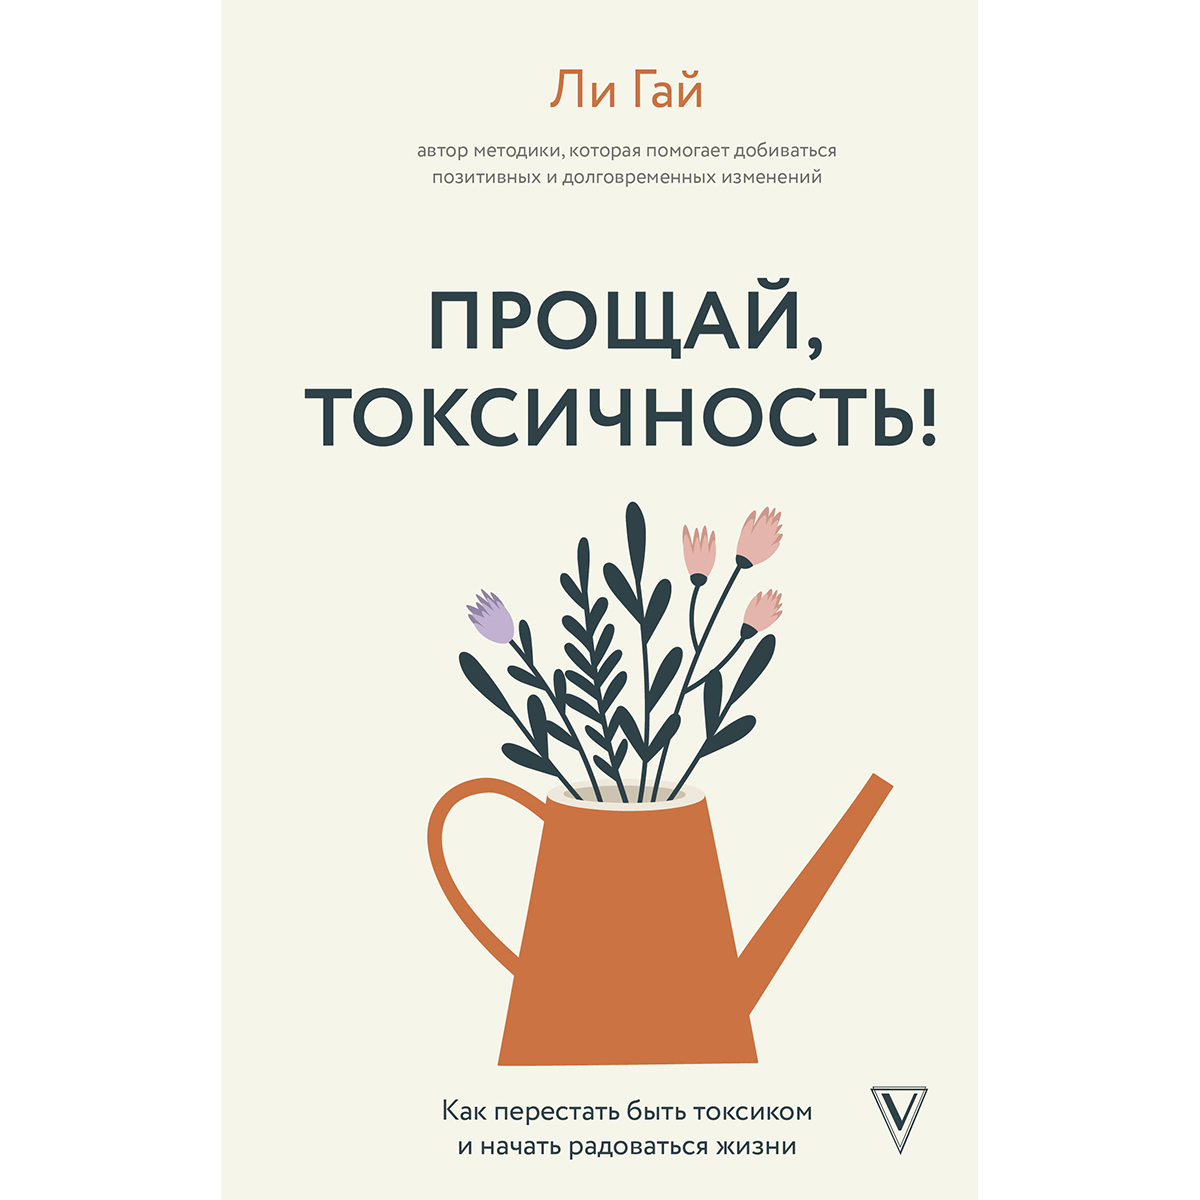 Гай Л.: Прощай, токсичность! Как перестать быть токсиком и начать  радоваться жизни: купить книгу по низкой цене в интернет-магазине Meloman |  Алматы